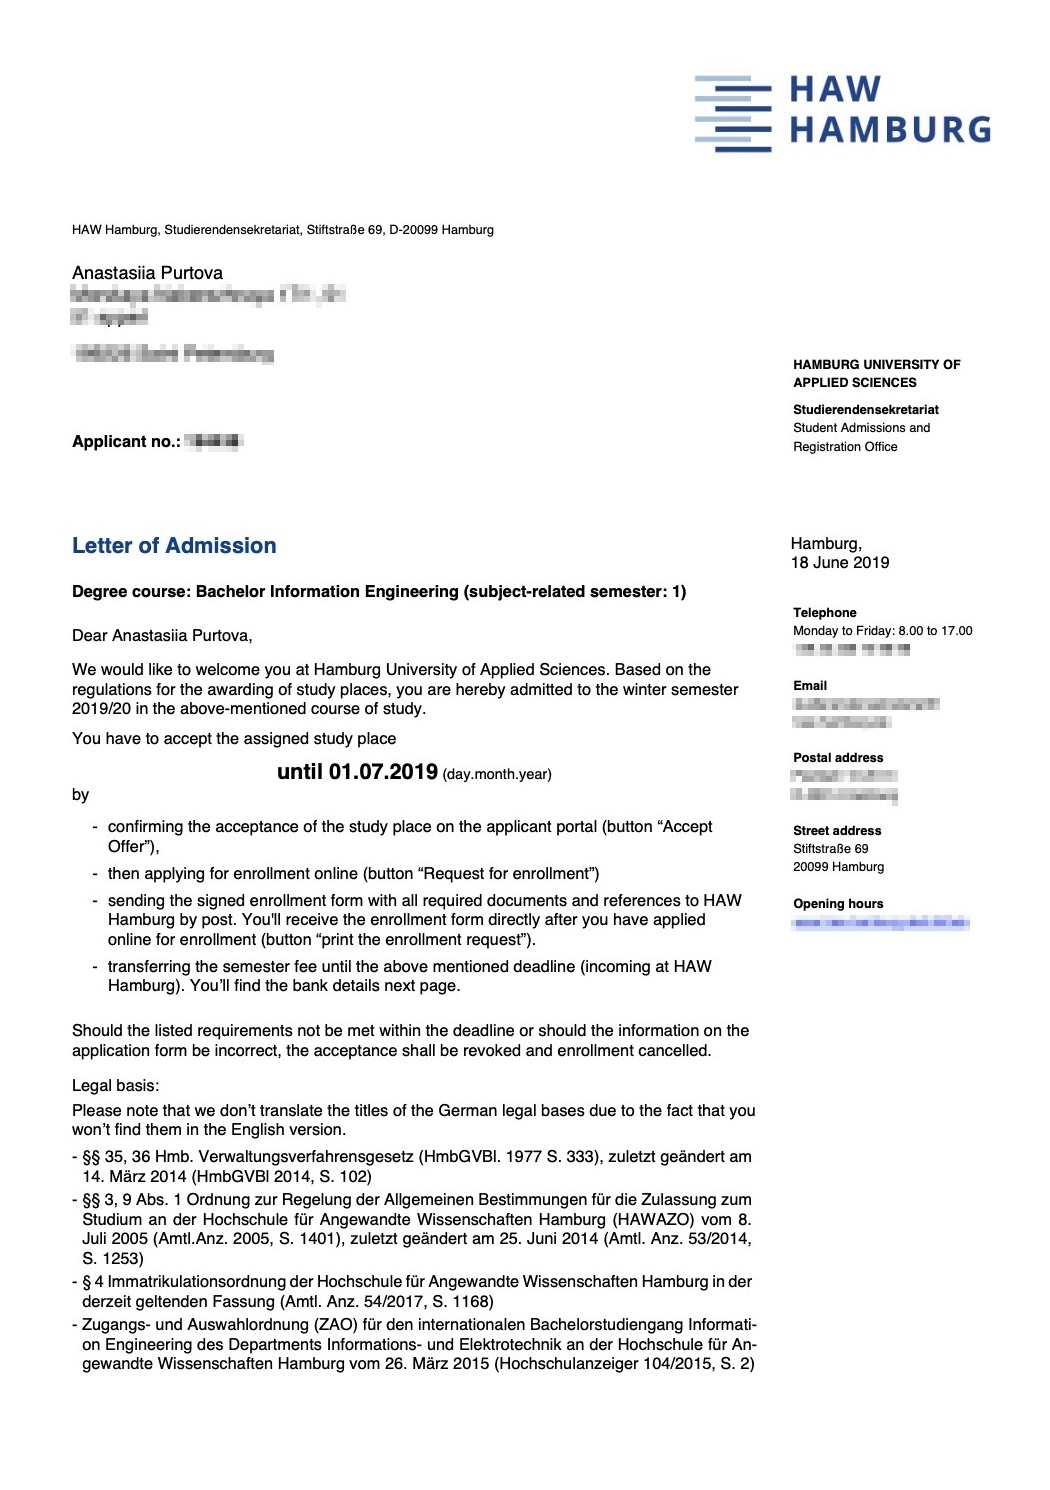 Письмо-приглашение от Гамбургского университета прикладных наук с указанием дальнейших шагов для закрепления статуса студента